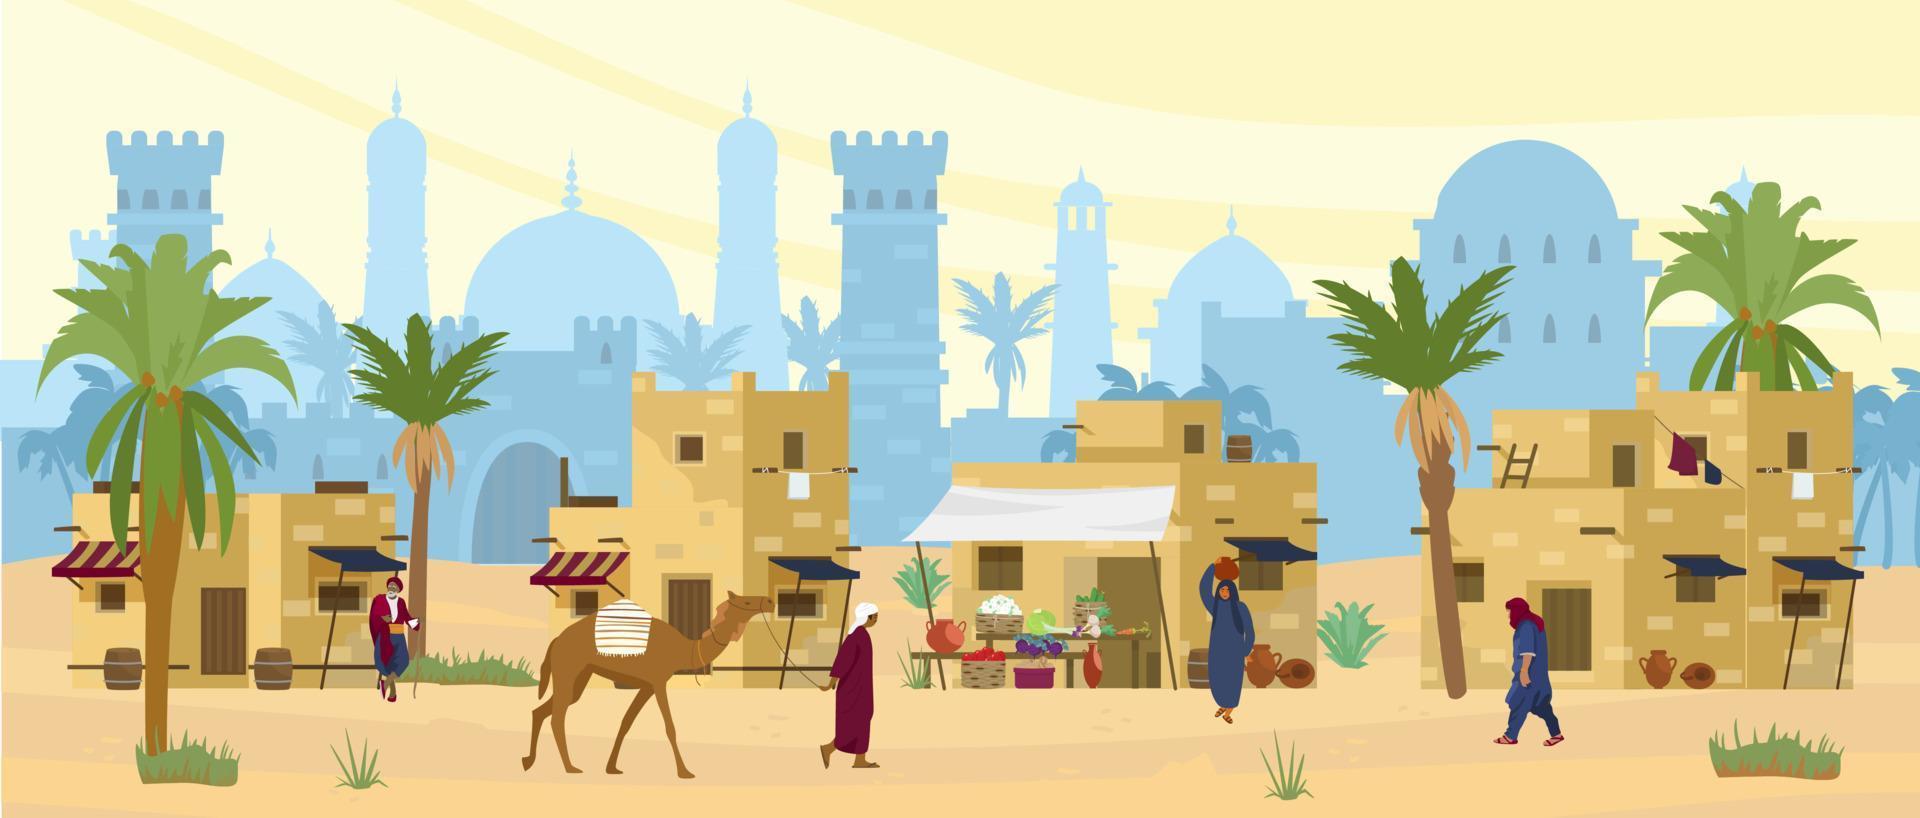 arabisch woestijnlandschap met traditionele modderbakstenen huizen en mensen. oude tempel op de achtergrond. bedoeïen met kameel, vrouw met kruik op hoofd. platte vectorillustratie. vector